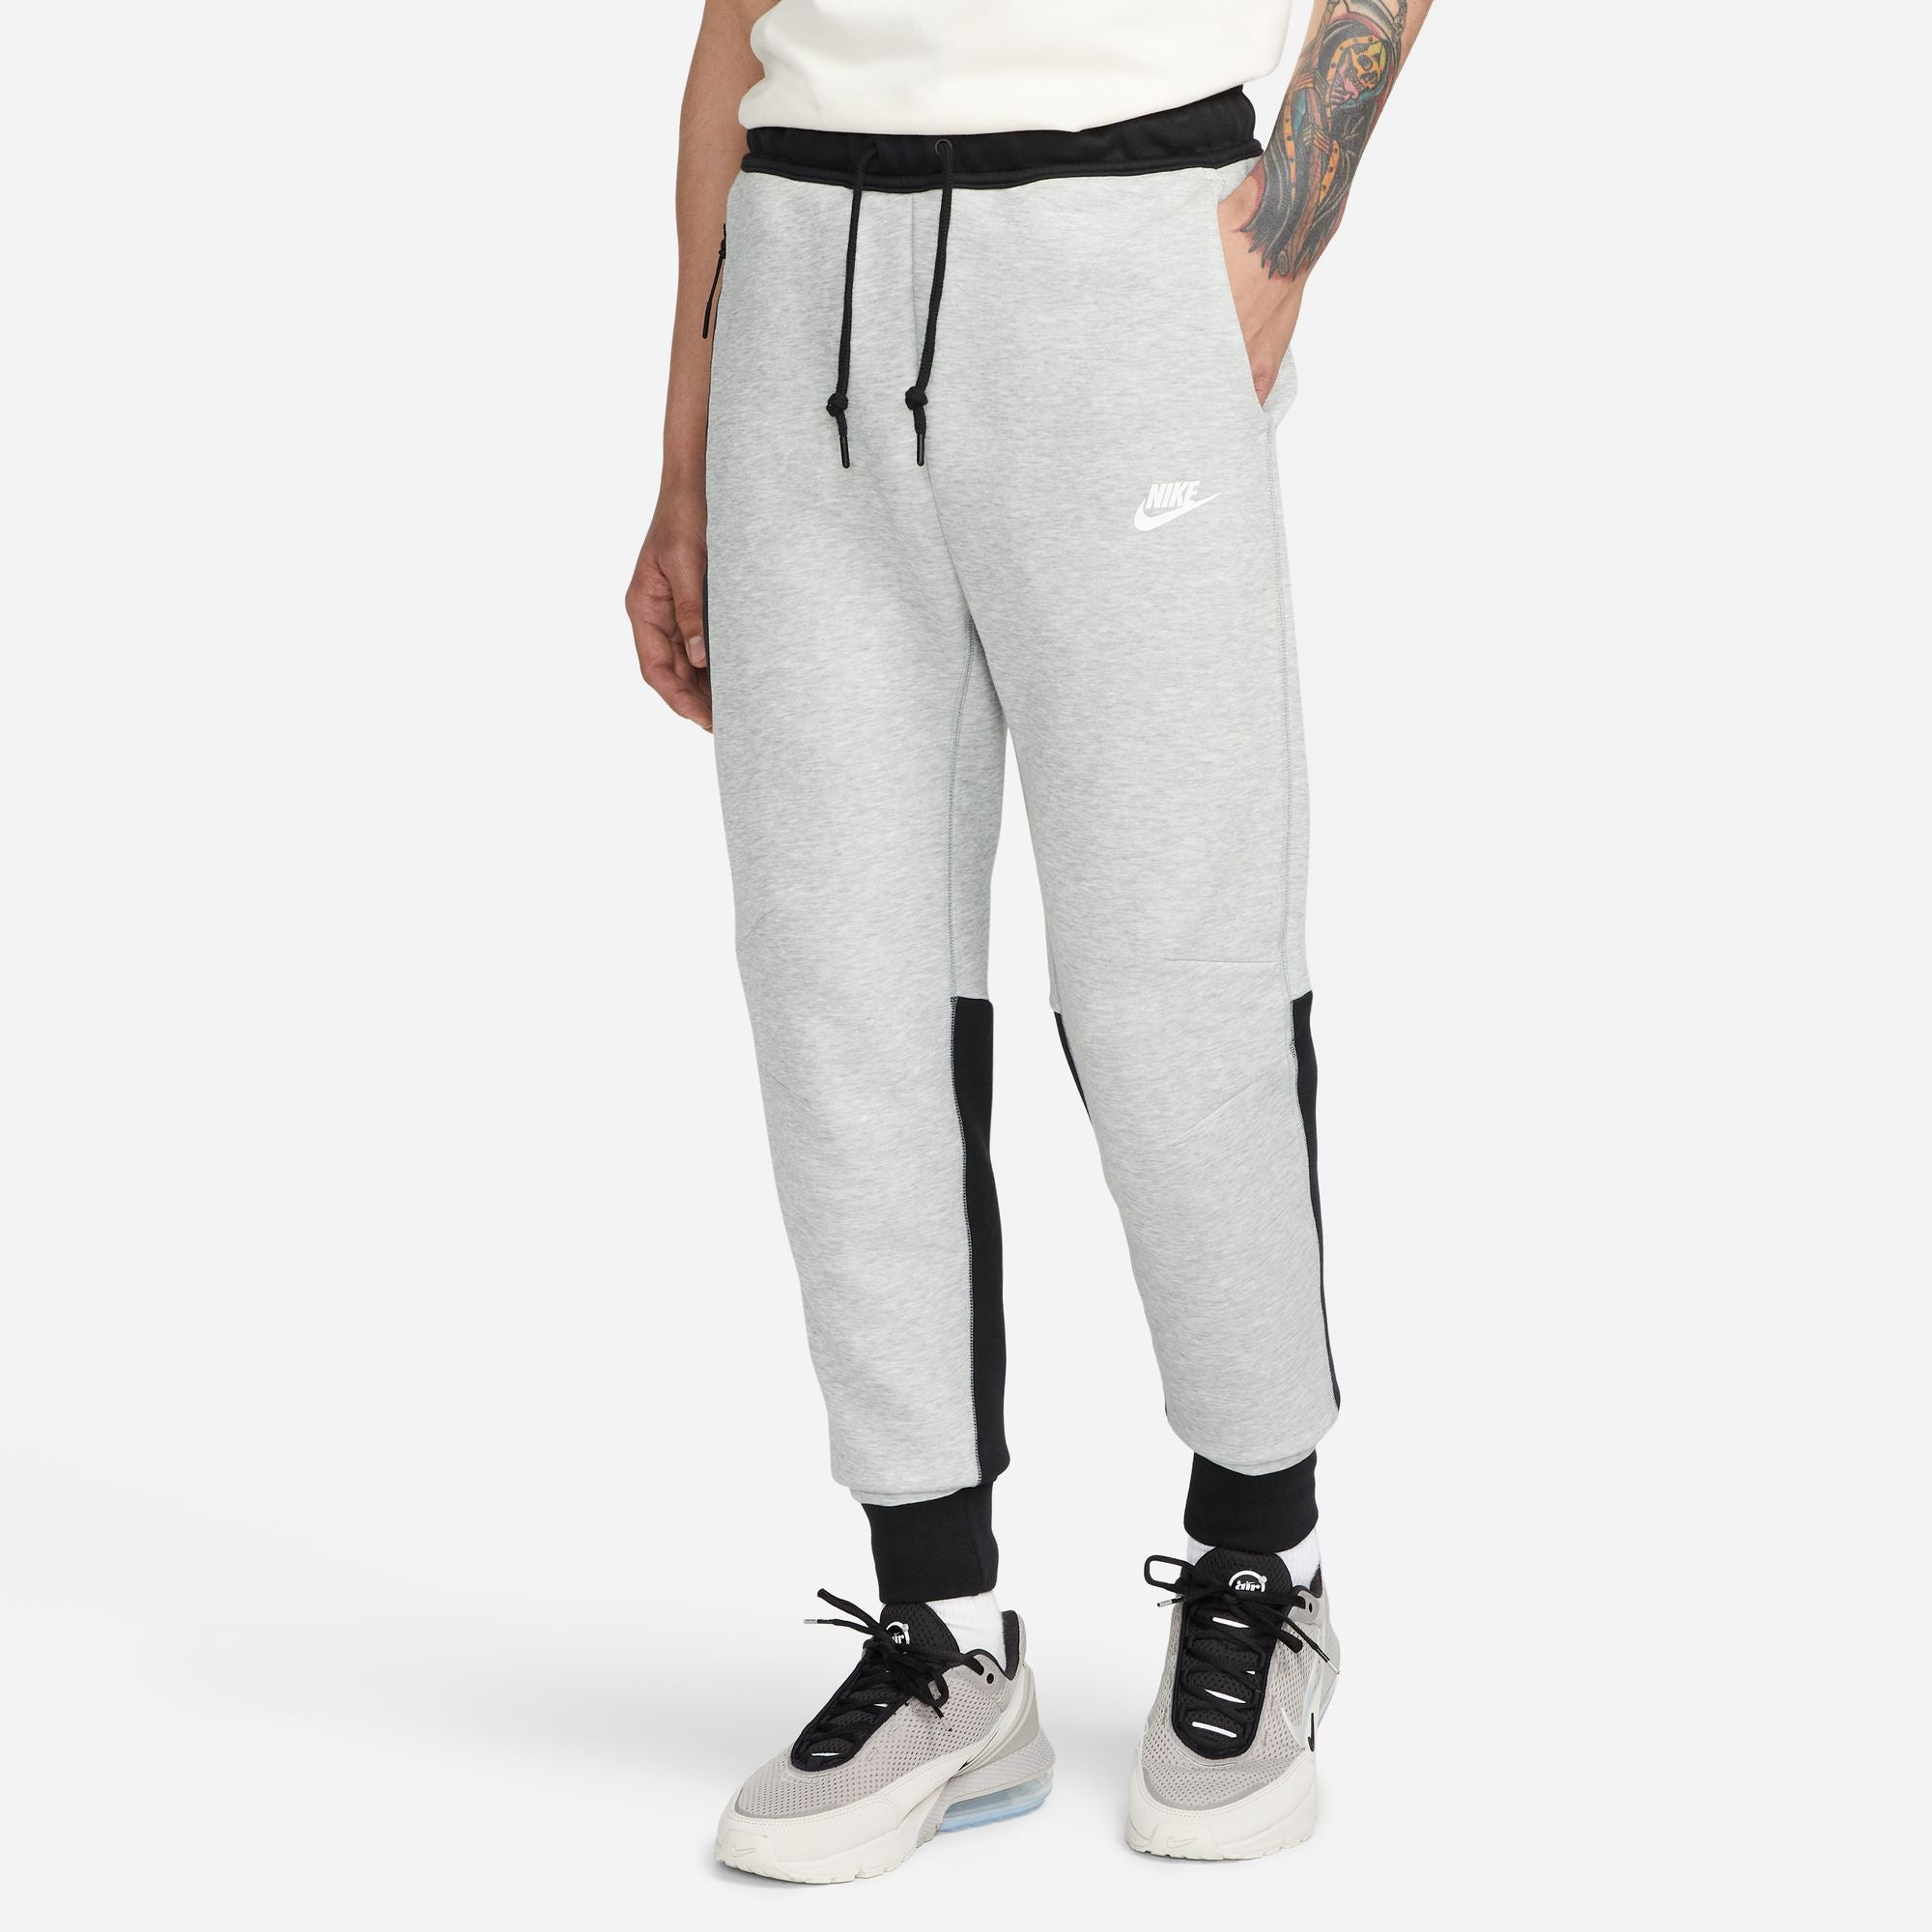 Pantaloni Nike Tech Fleece - Grigio/Nero